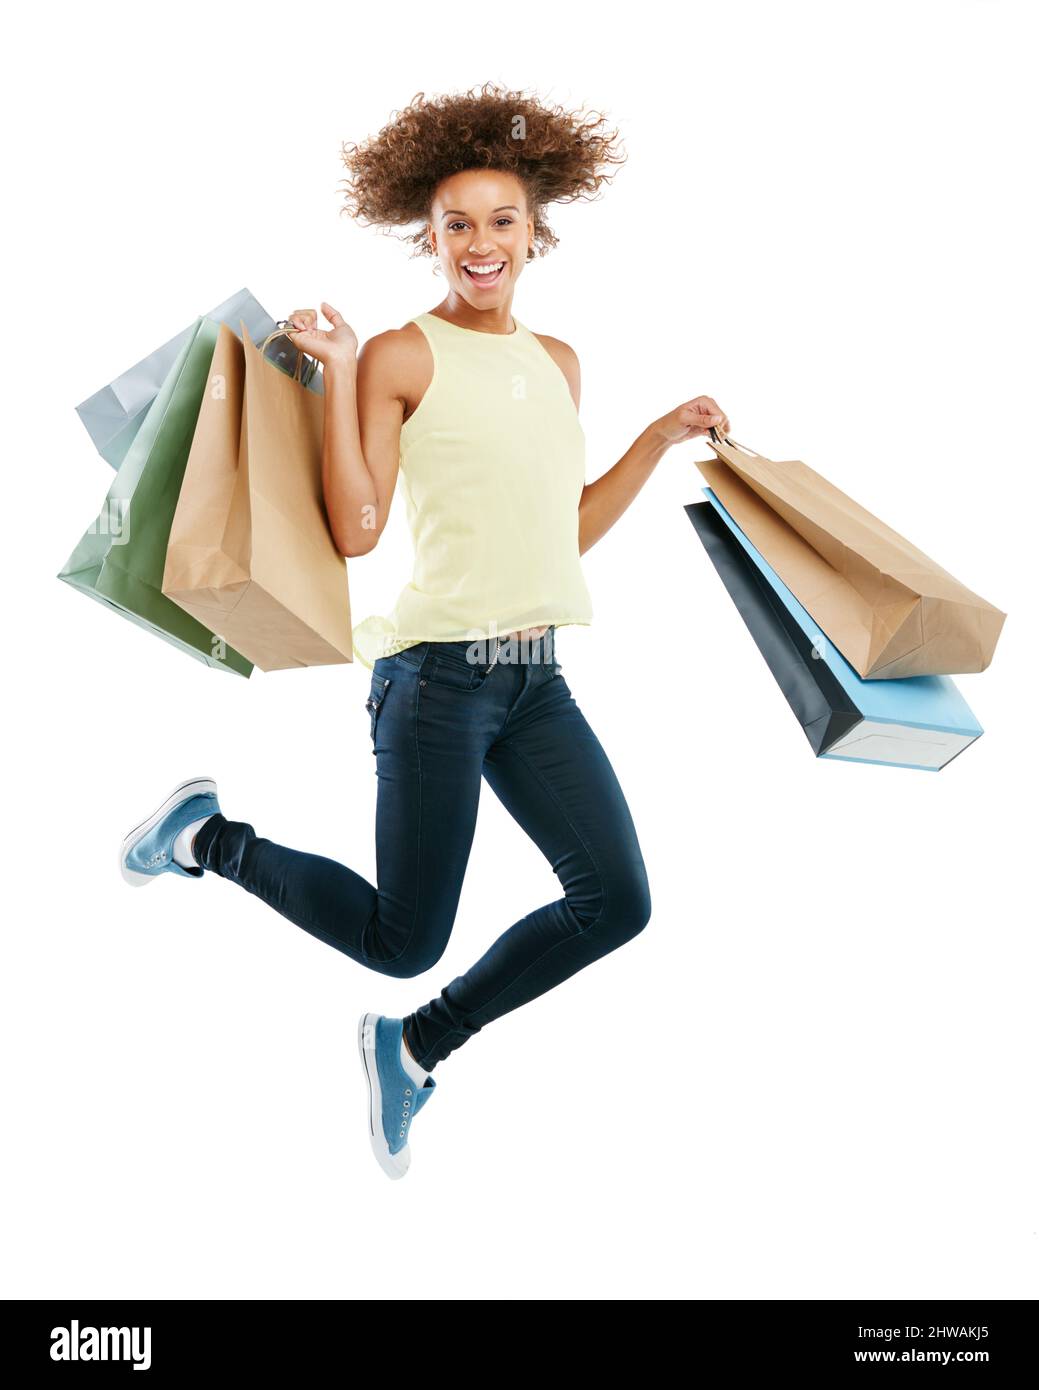 Genuss am Zahltag. Studioportrait einer aufgeregten jungen Frau, die Einkaufstaschen trägt und vor Freude vor weißem Hintergrund springt. Stockfoto